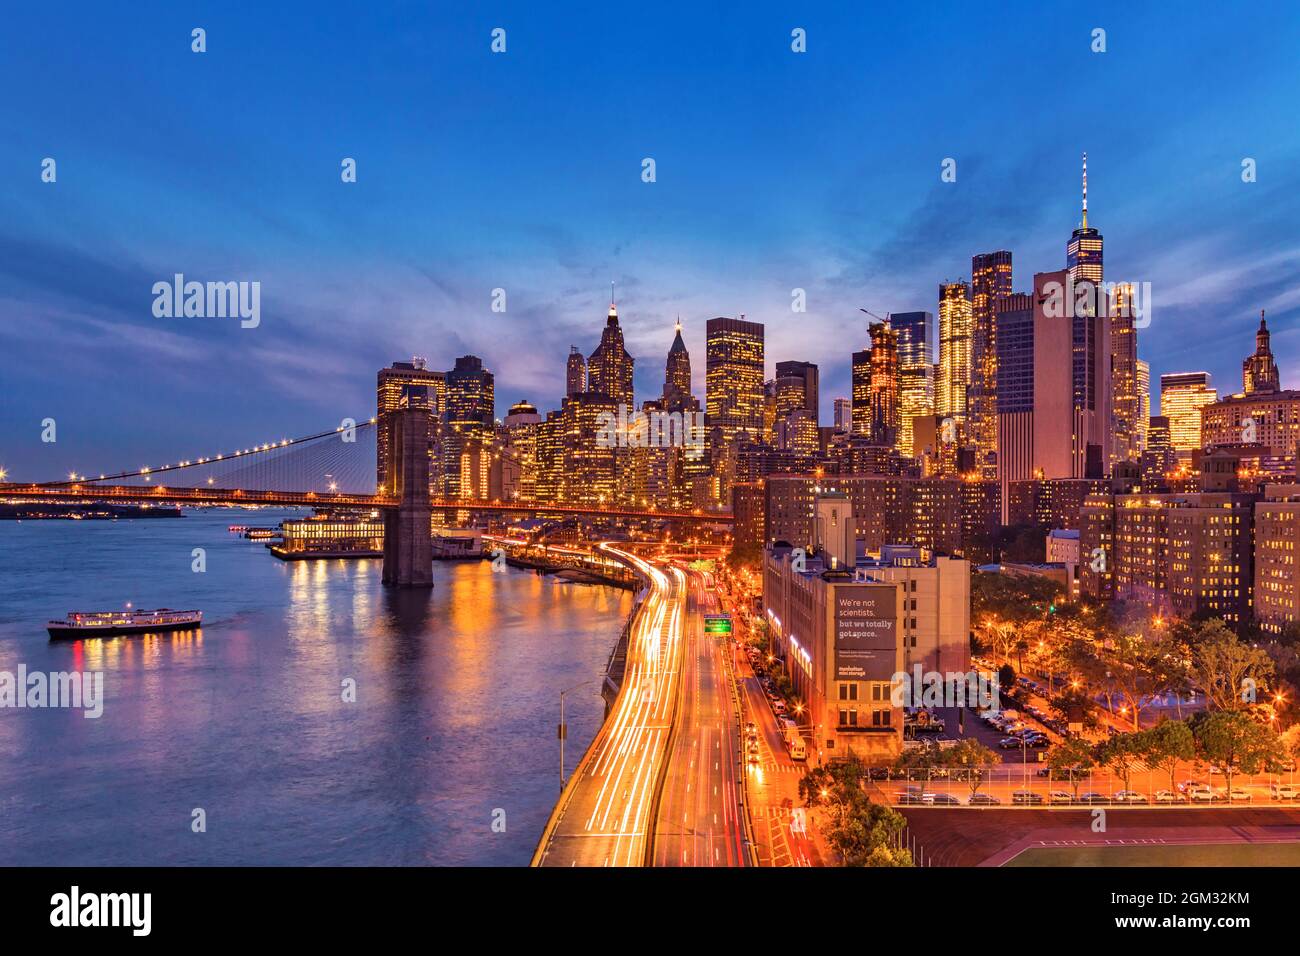 Pont de Brooklyn et Manhattan Skyline - voir pour le pont de Brooklyn, l'autoroute du FDR et du quartier financier au cours de l'heure bleue. Banque D'Images